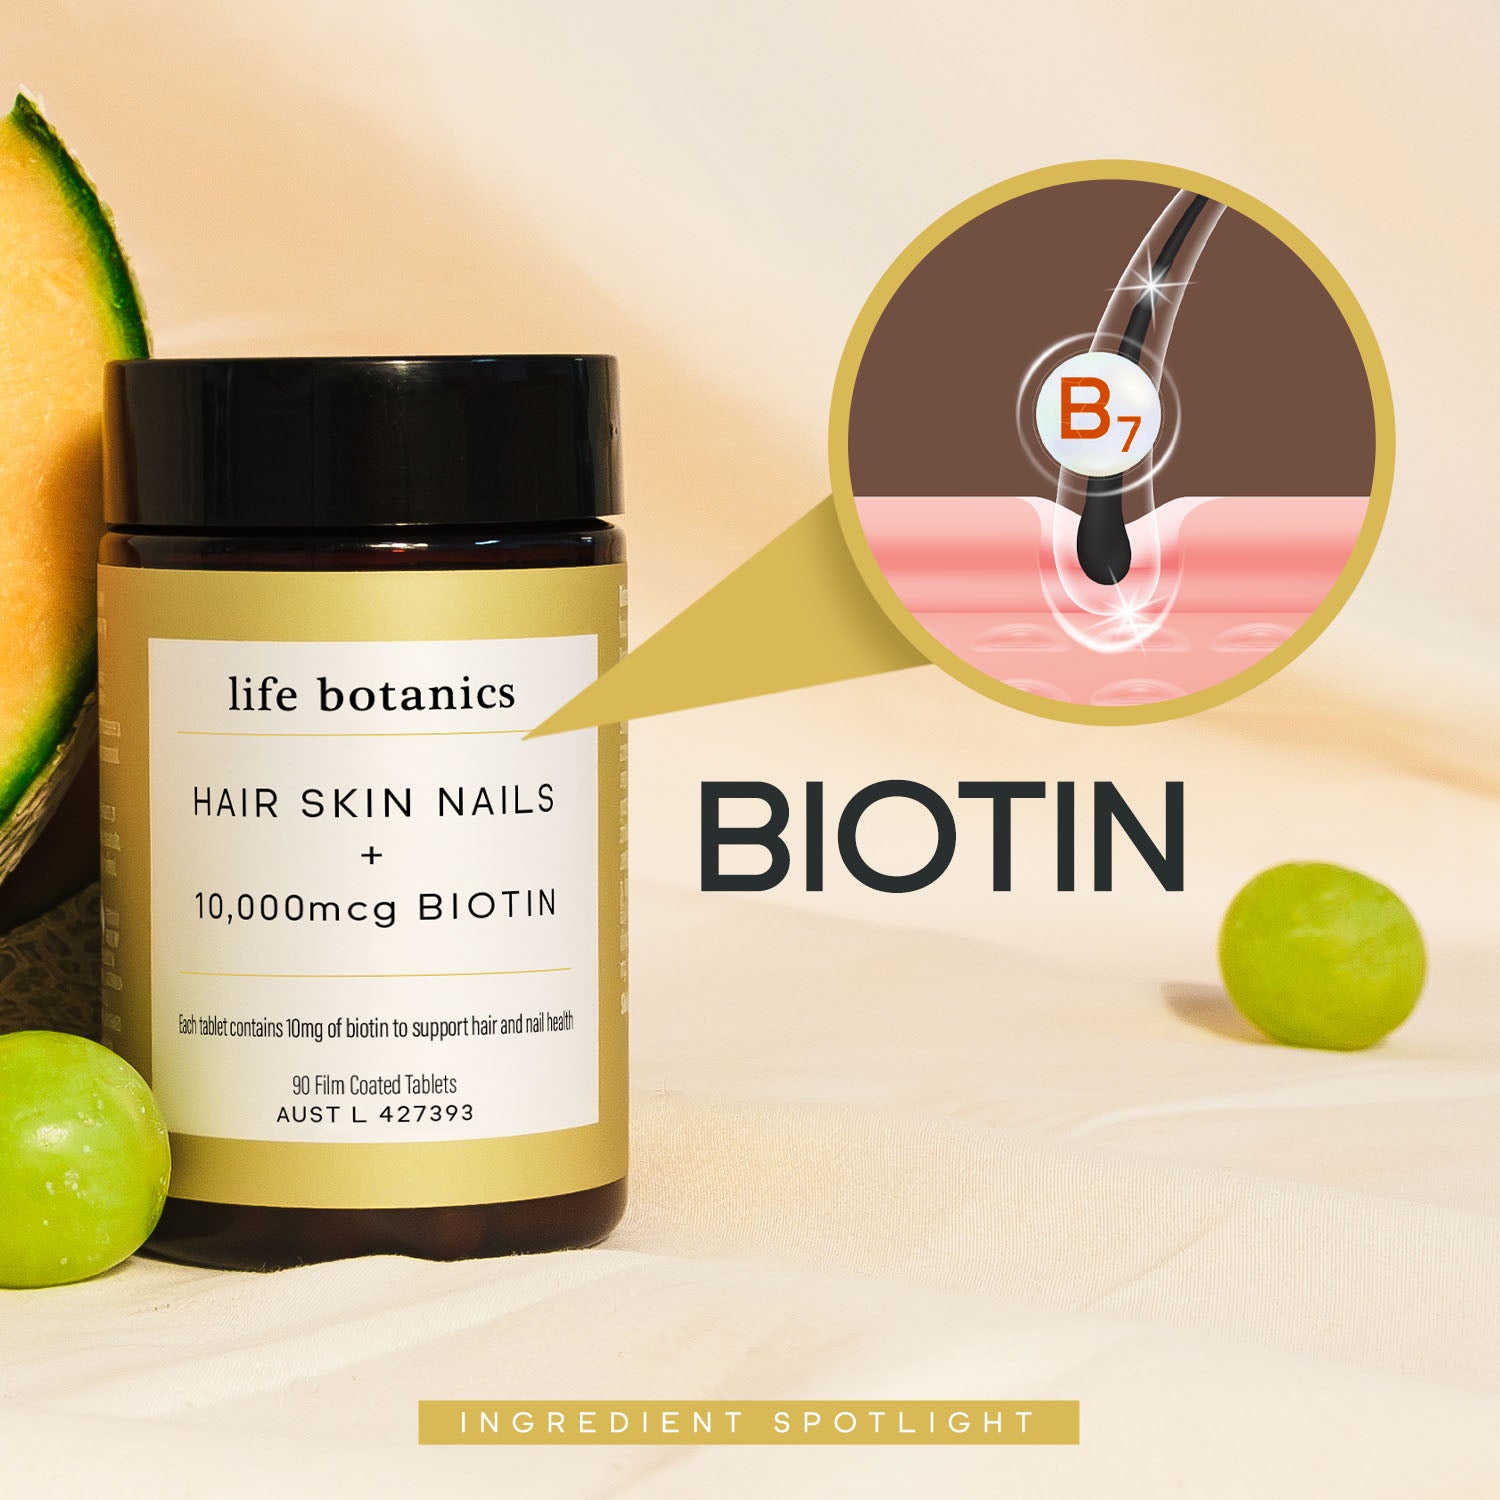 life botanics Hair Skin Nails + 10,000mcg Biotin Biotin